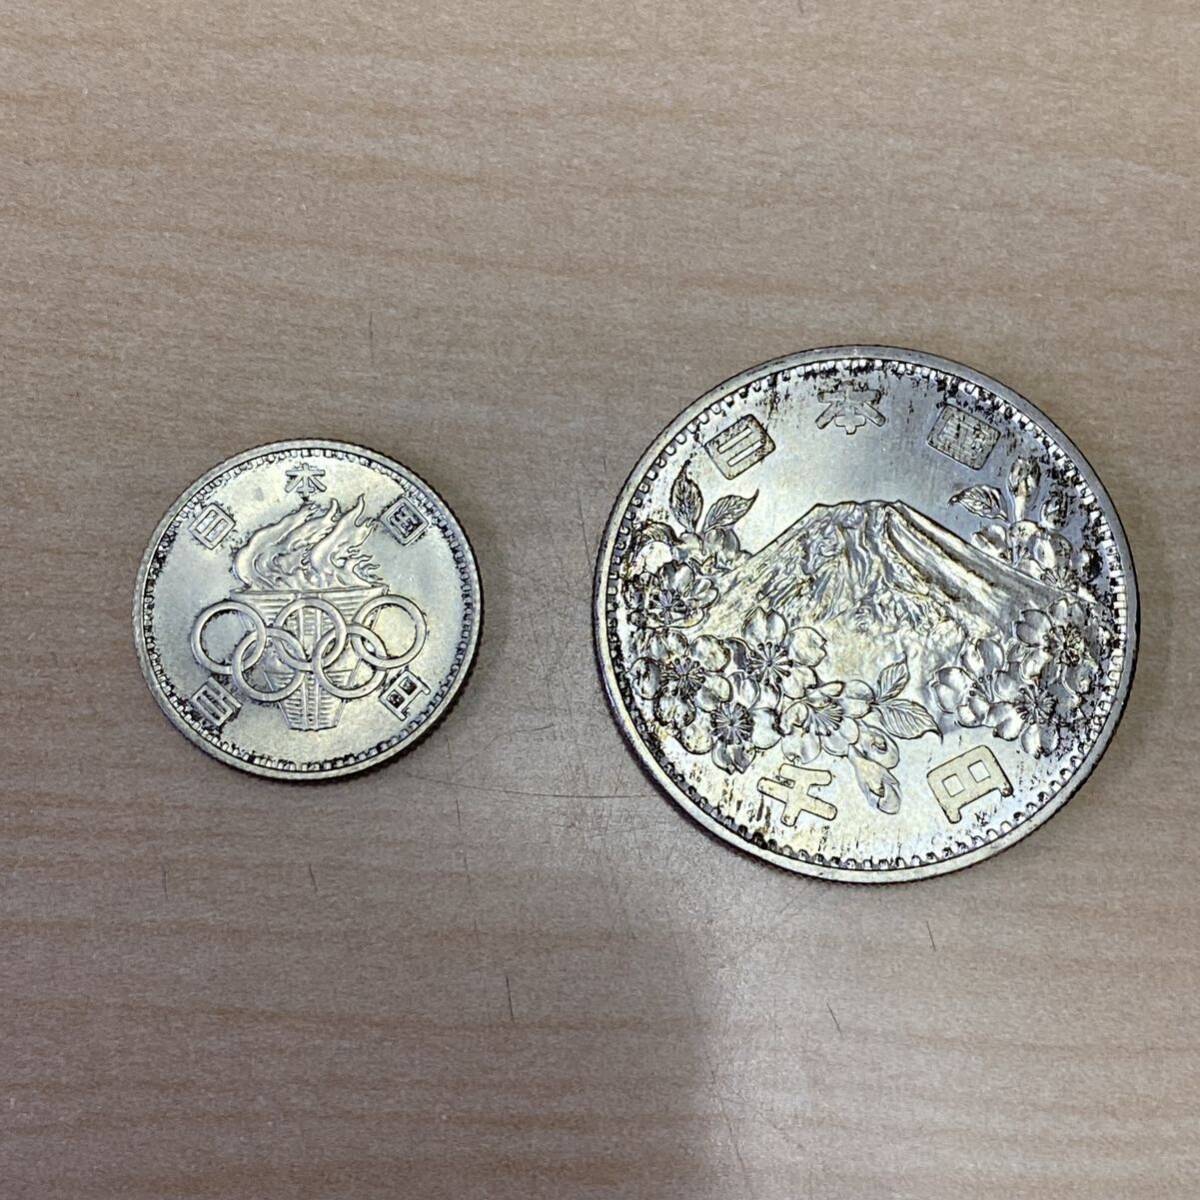 【TK0403】 1964年 東京オリンピック 記念貨幣 セット 1000円銀貨 100円銀貨 ケース入り 日本 古銭 コレクションの画像3